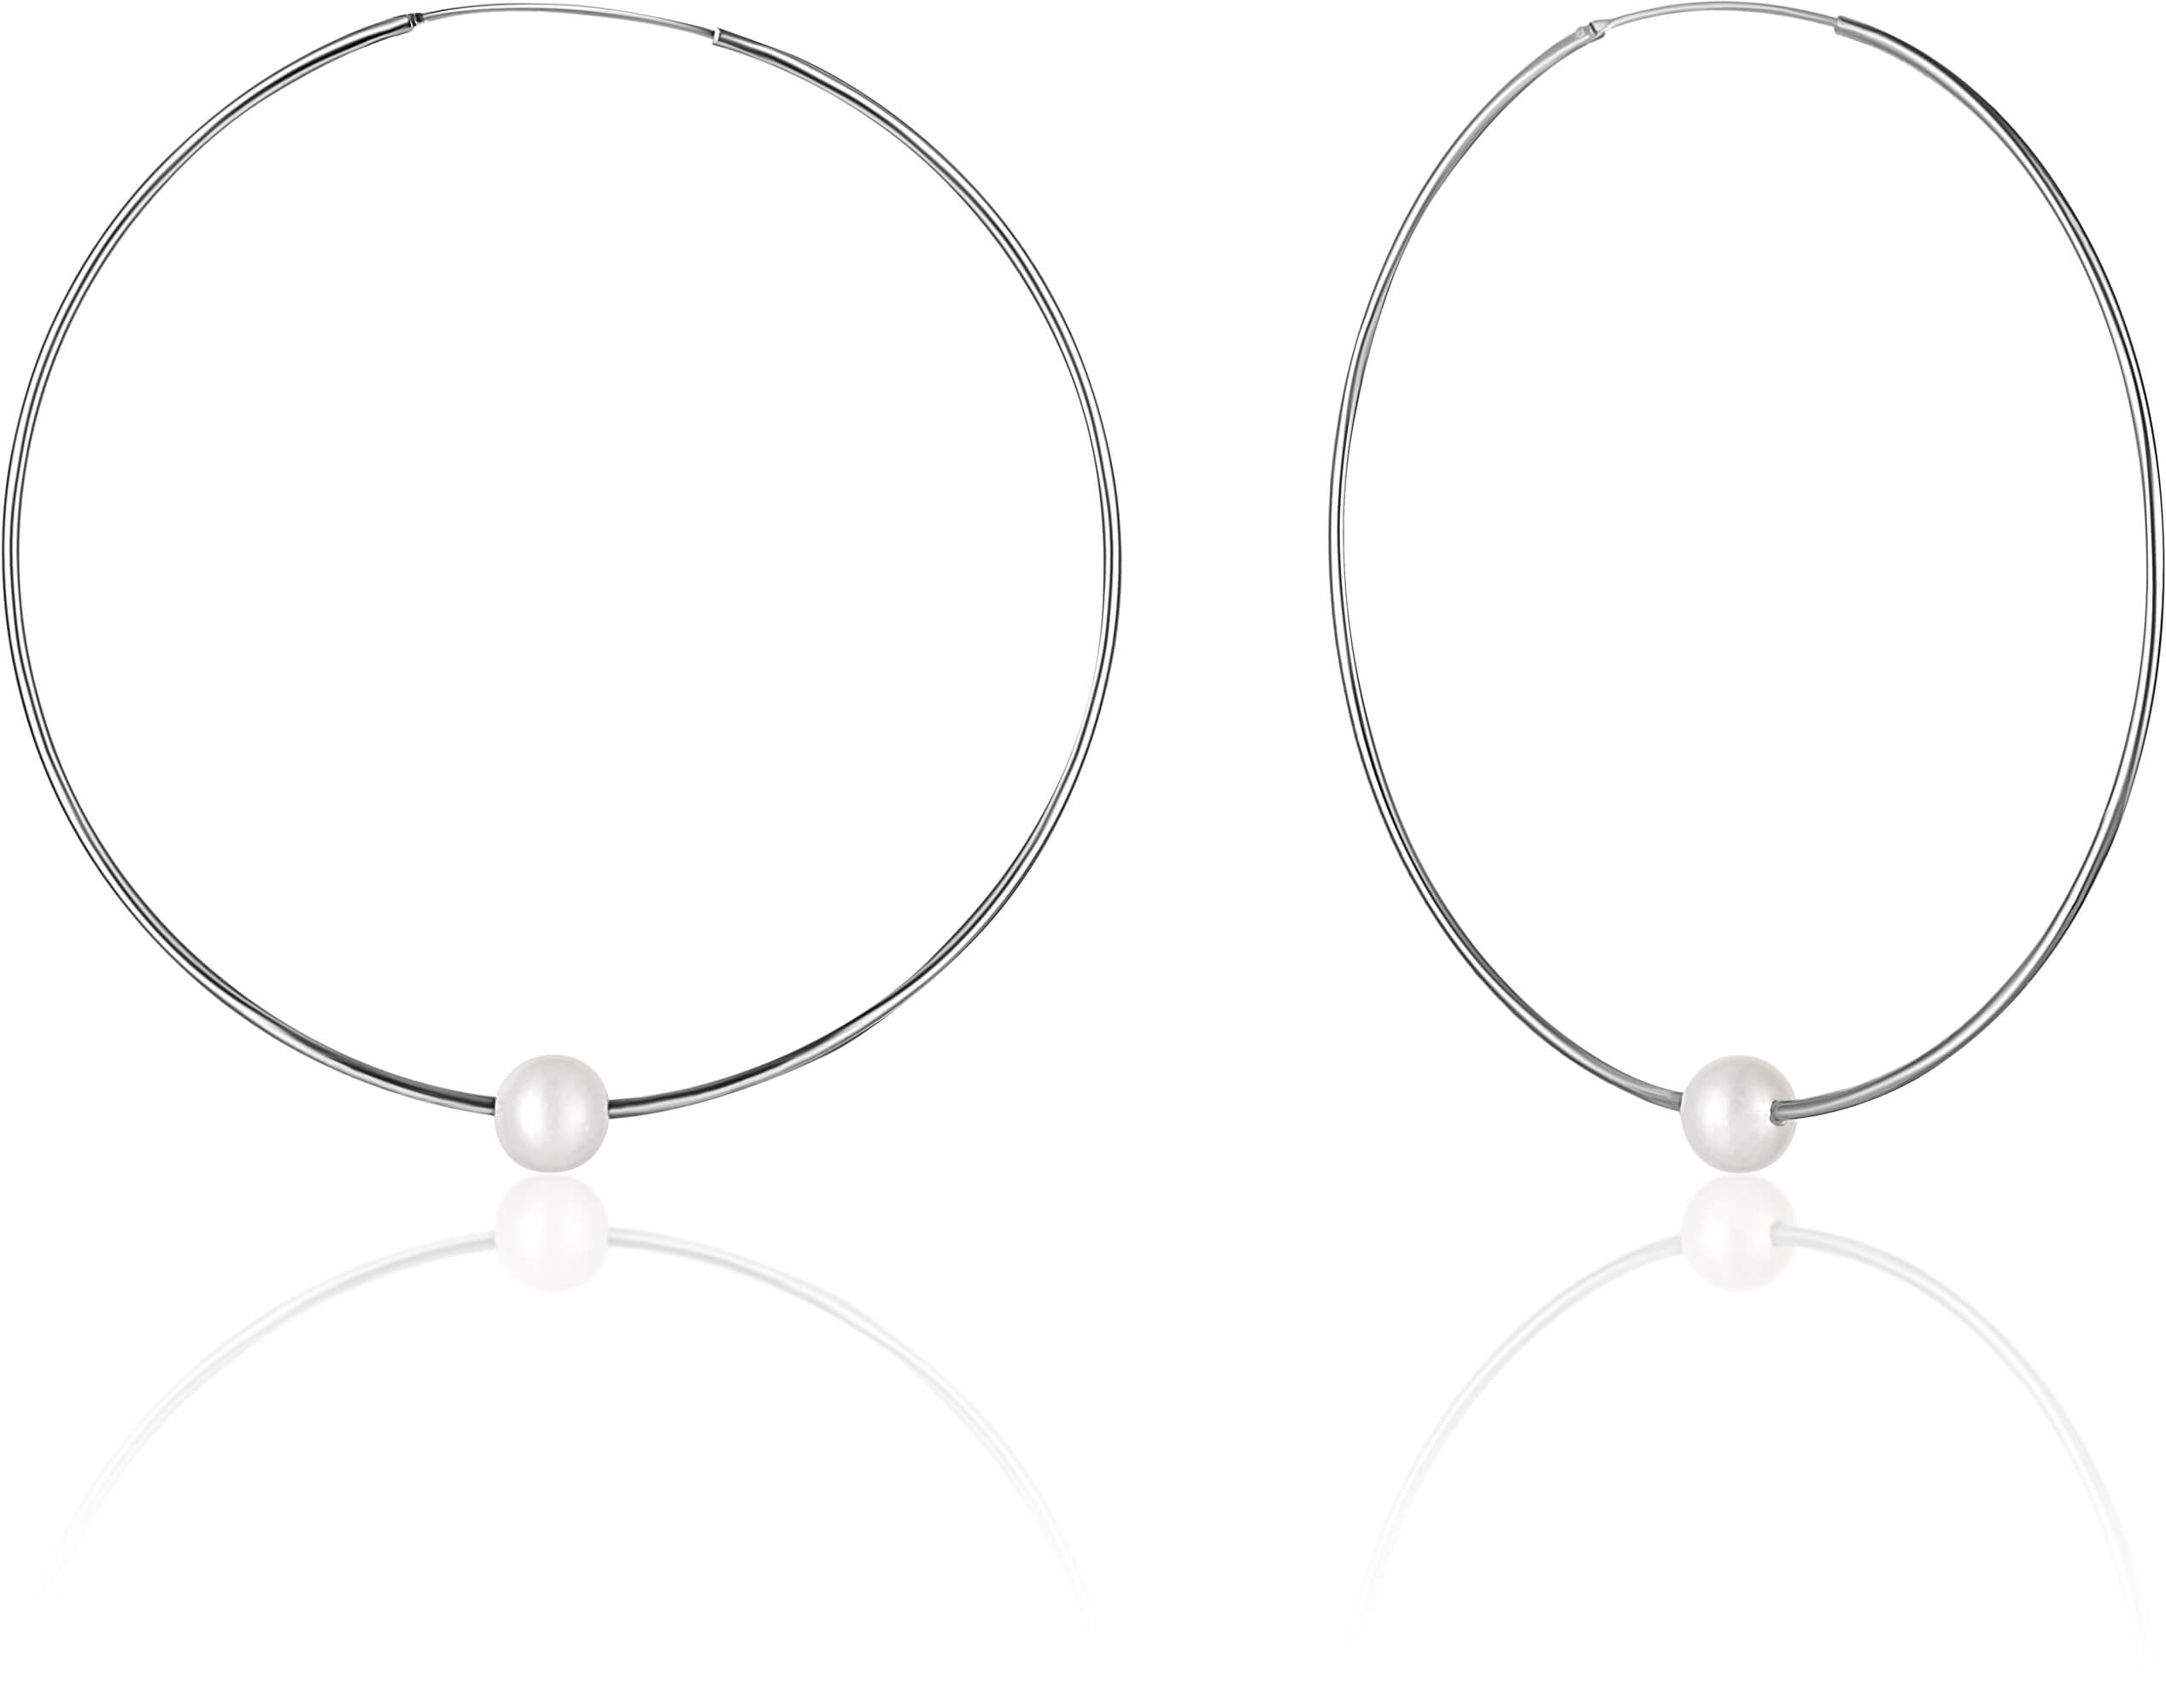 JwL Luxury Pearls Stříbrné náušnice kruhy s pravými bílými perlami JL0638